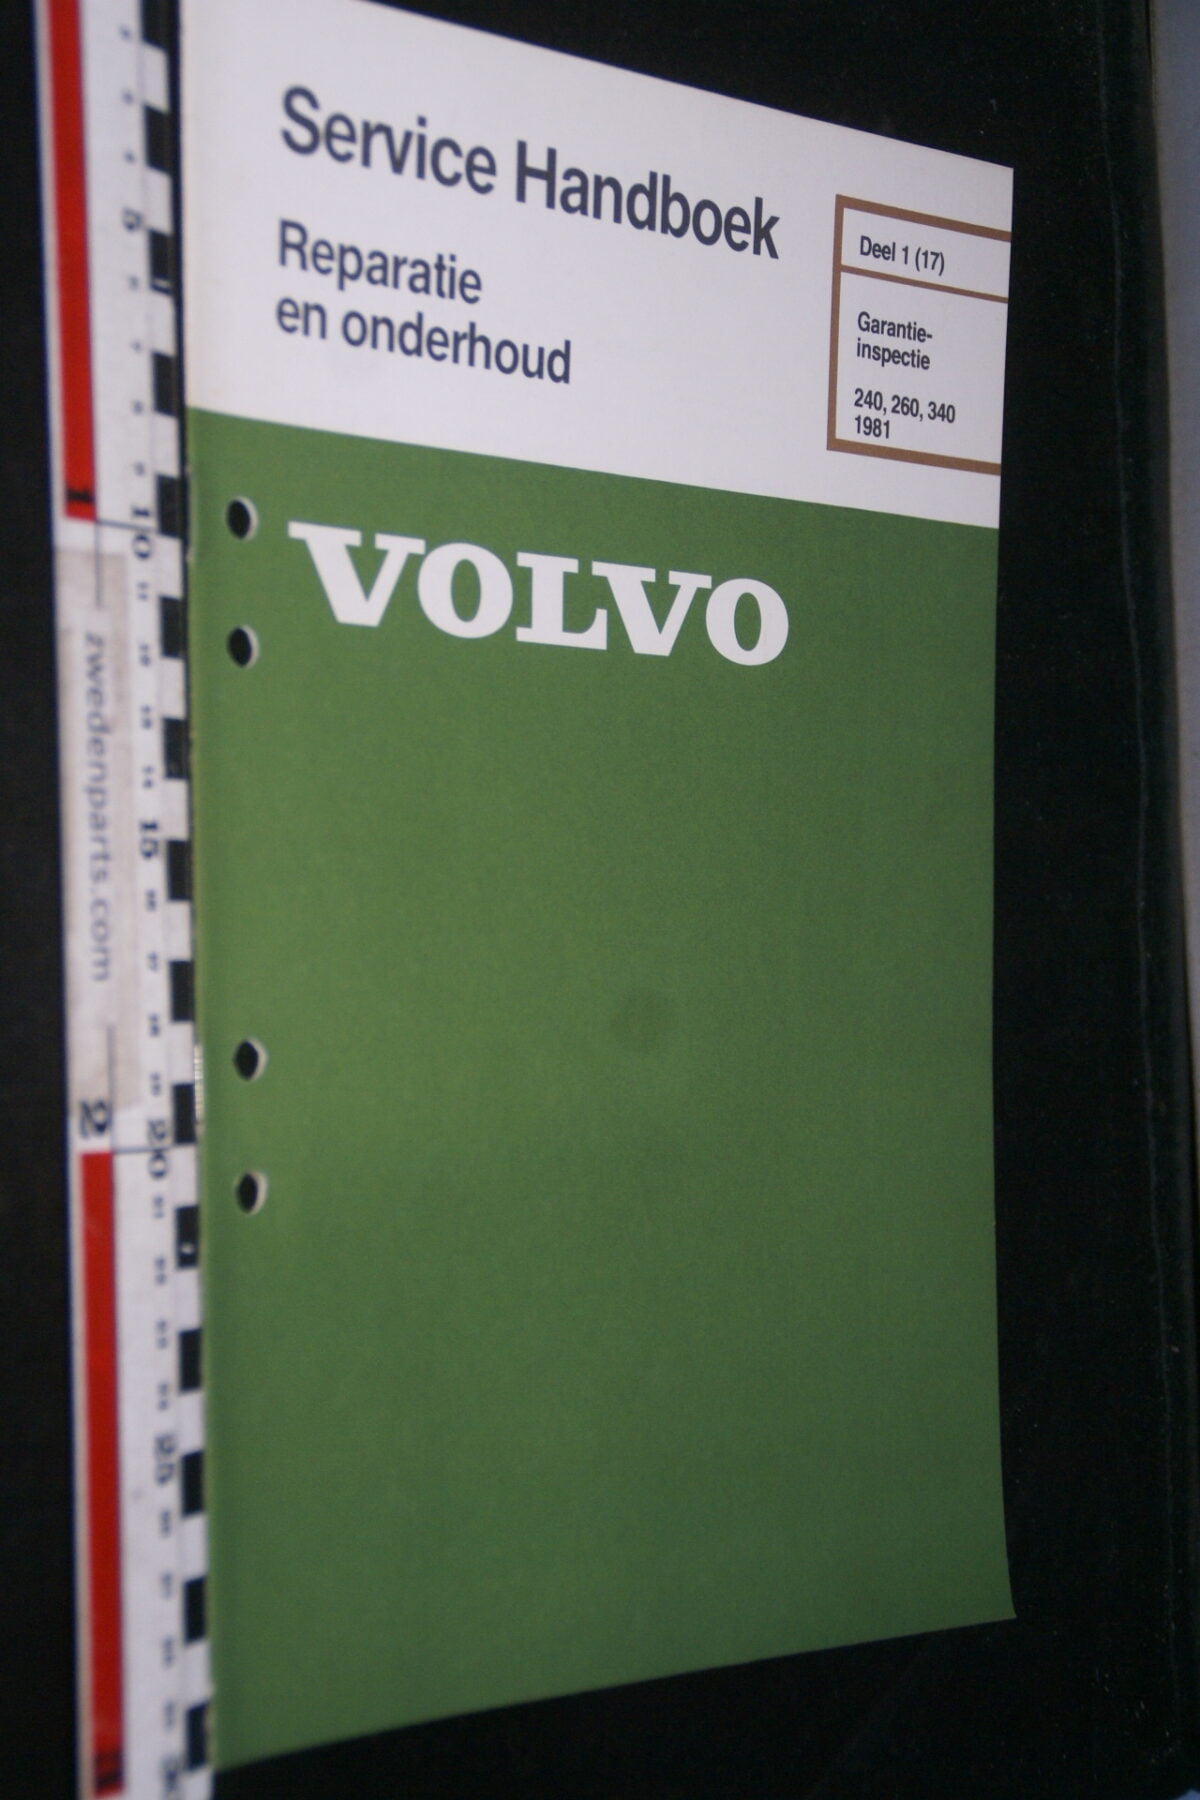 DSC02820 1981 origineel werkplaatsboek 1(17) Volvo 240 260 garantie inspectie 1 van 800, nr TP 30369-1-4fd213e0